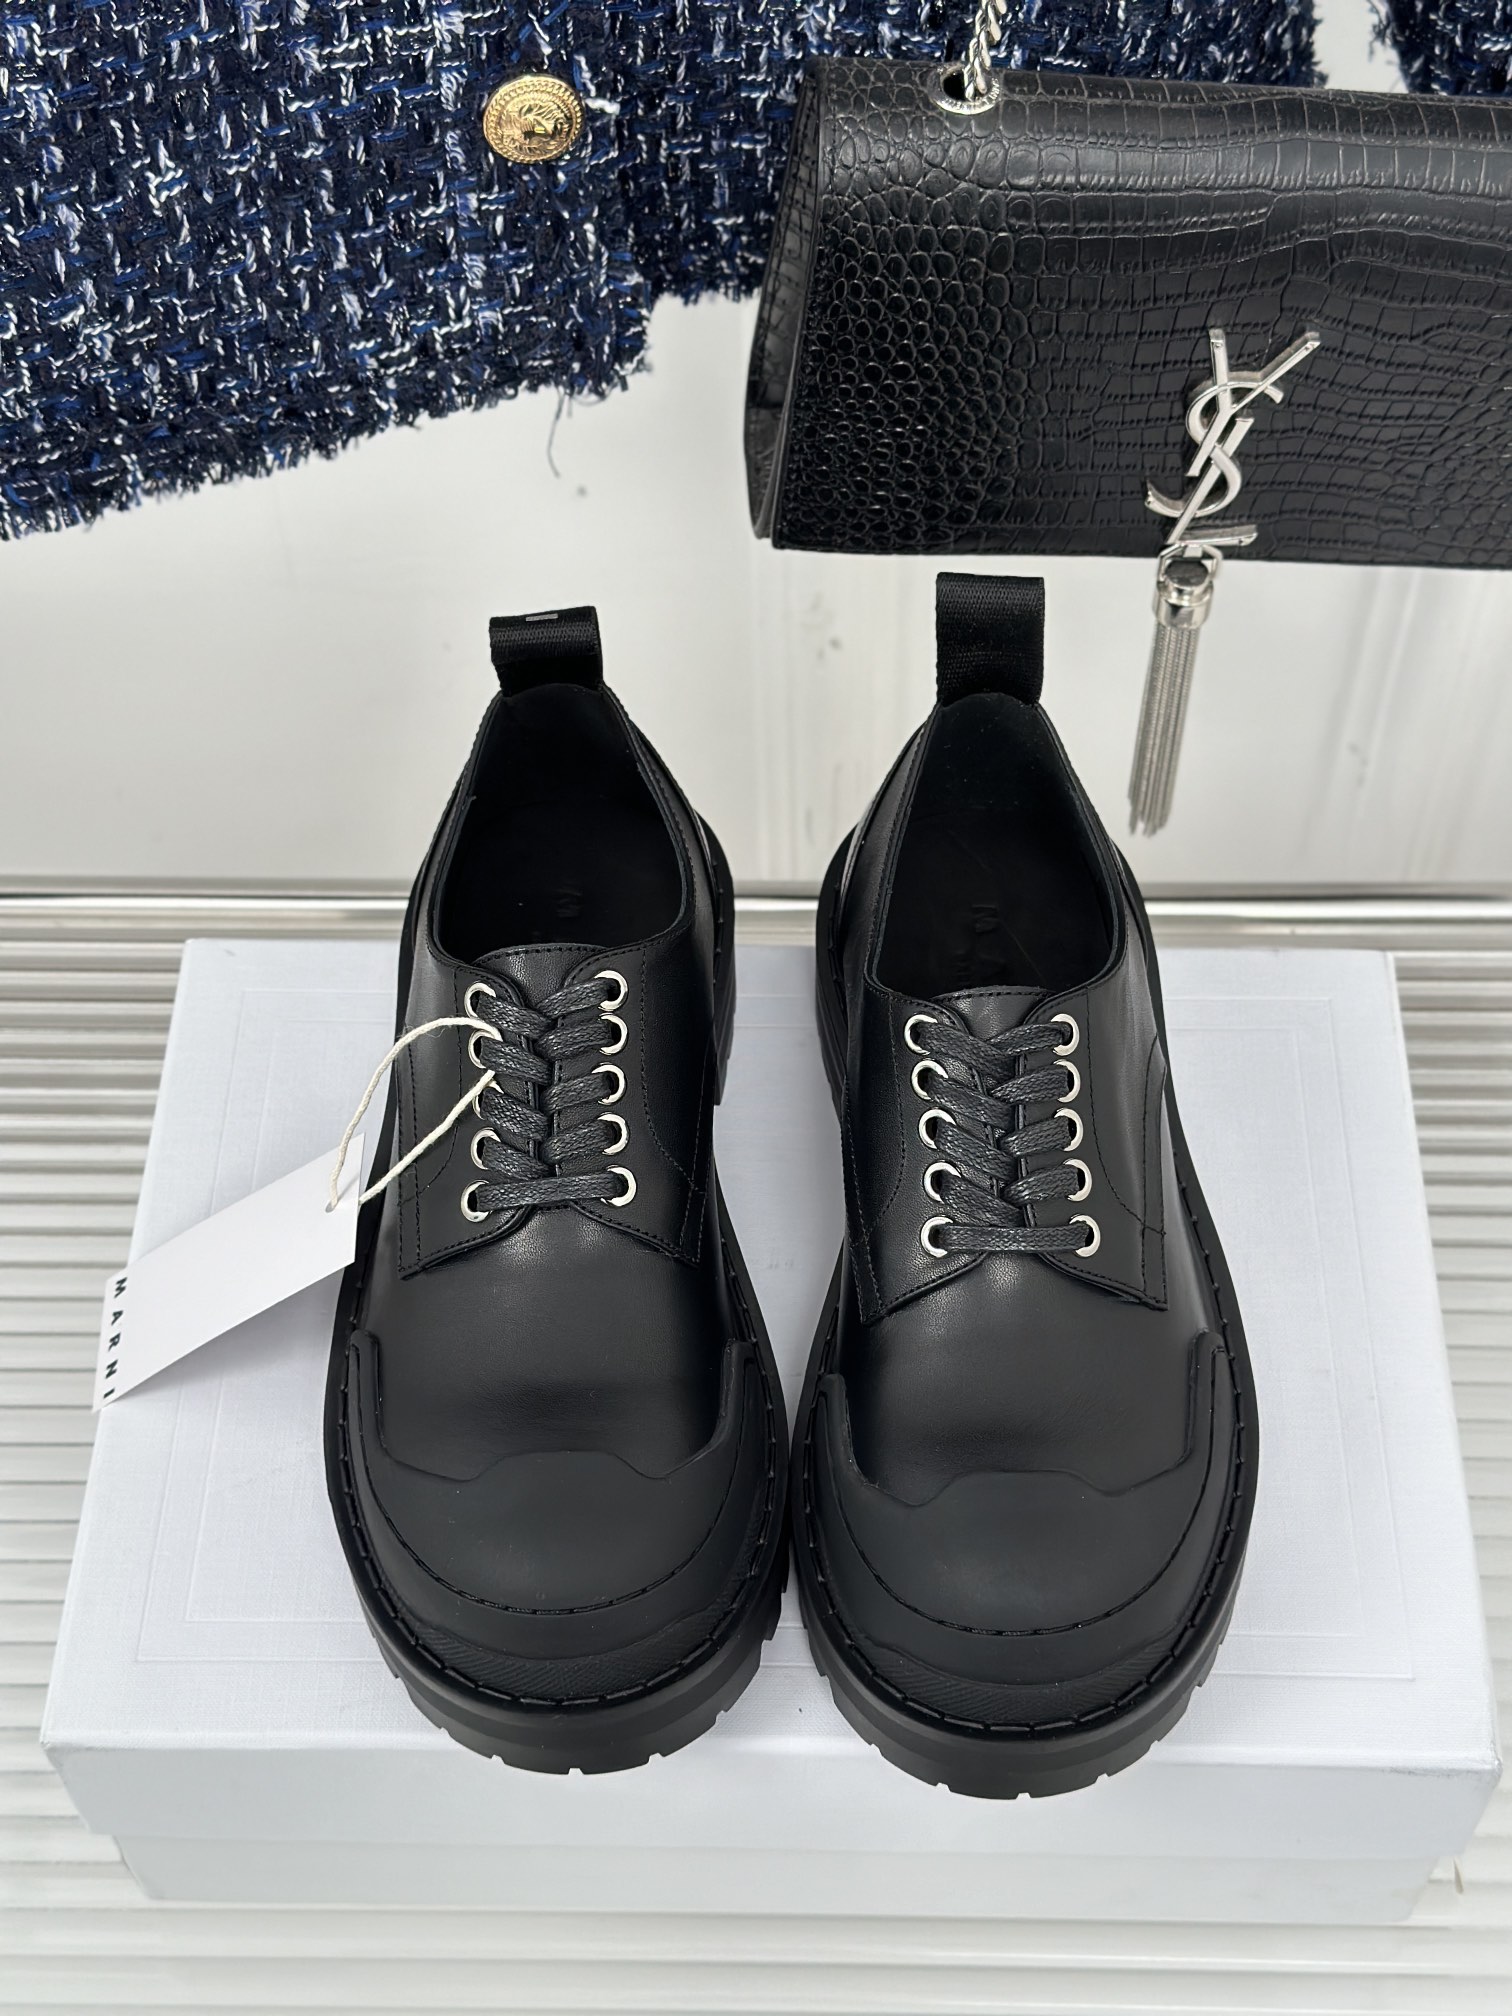 Marni玛尼23S经典四季厚底系带小皮鞋鞋型整体特别简洁还复古配色干净不过时是一双舒适和质感并存的小白